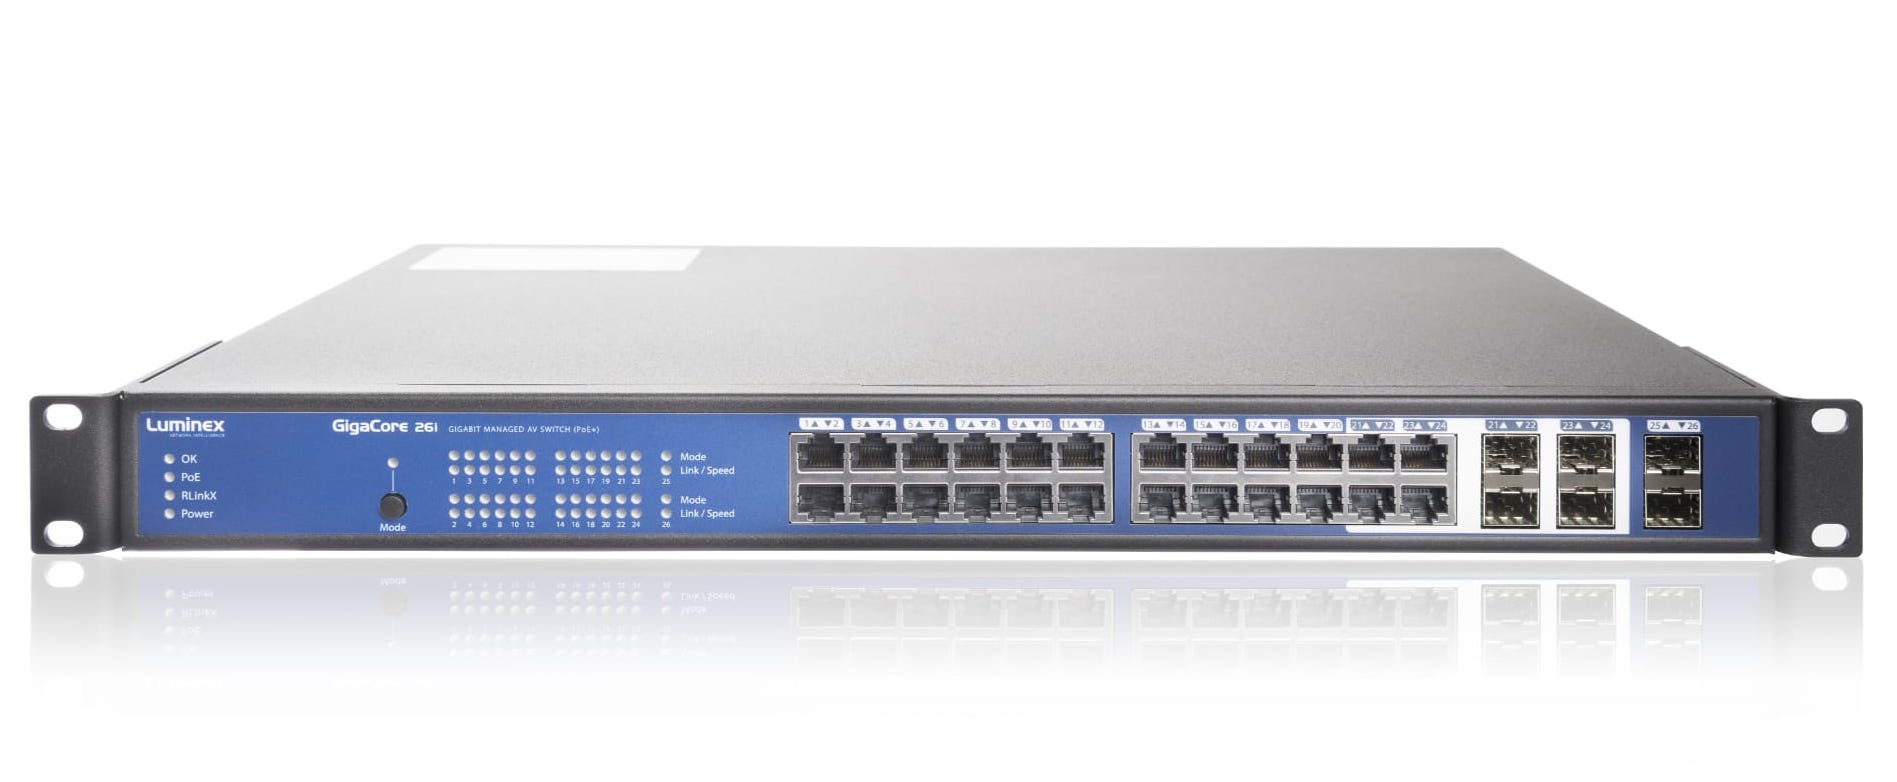 Luminex Gigacore 26i POE + Ethernet Switch